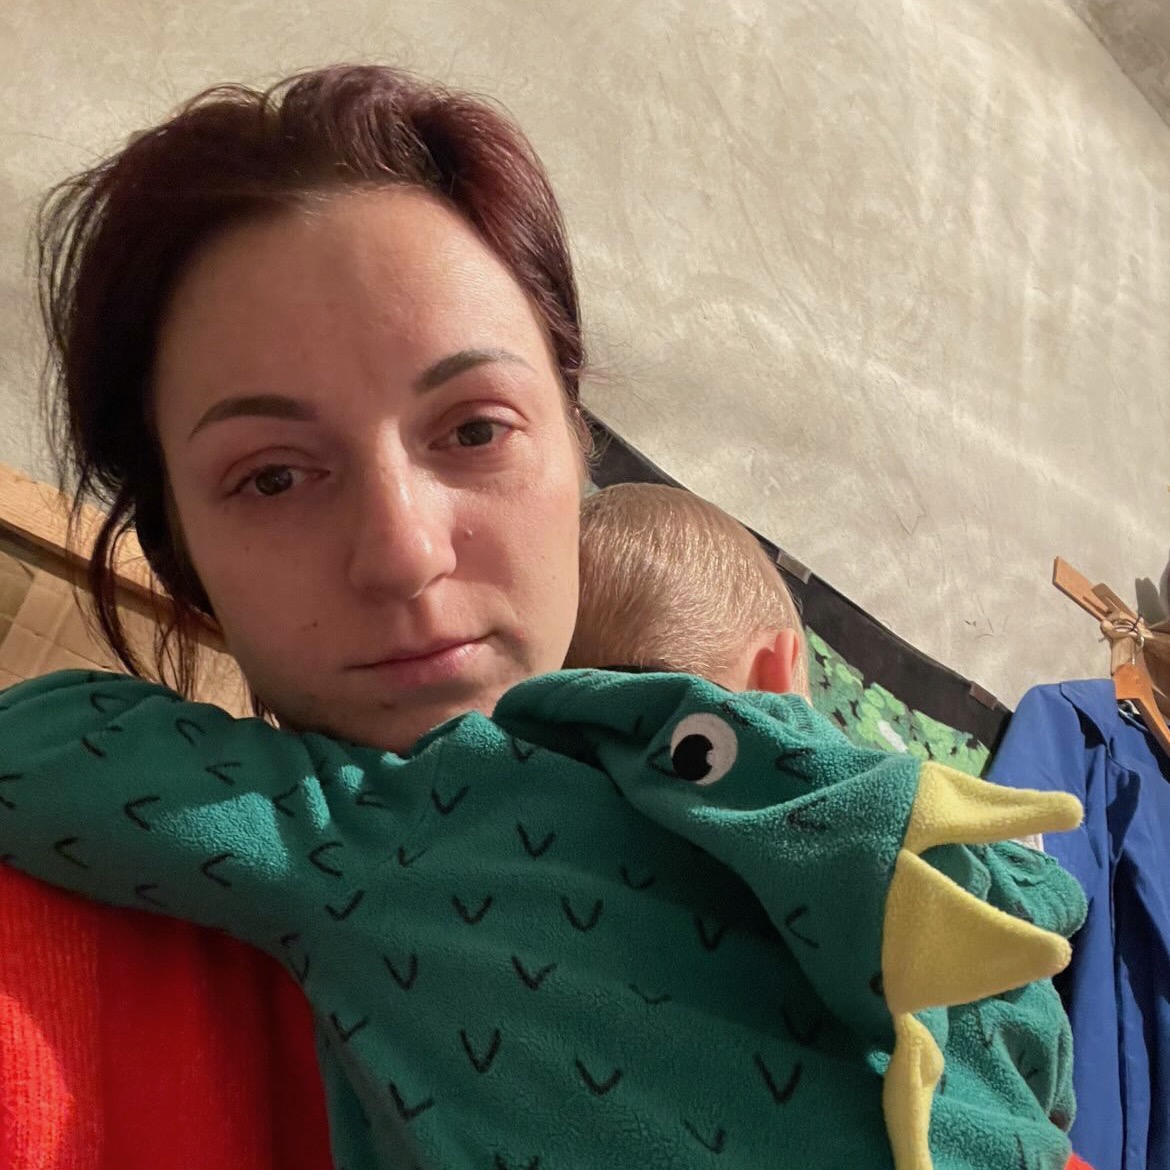 “El hijo aprendió nuevas palabras: «baj» (¡pum!) y «boyusia» (tengo miedo)», Halyna, 29, Región de Kiev